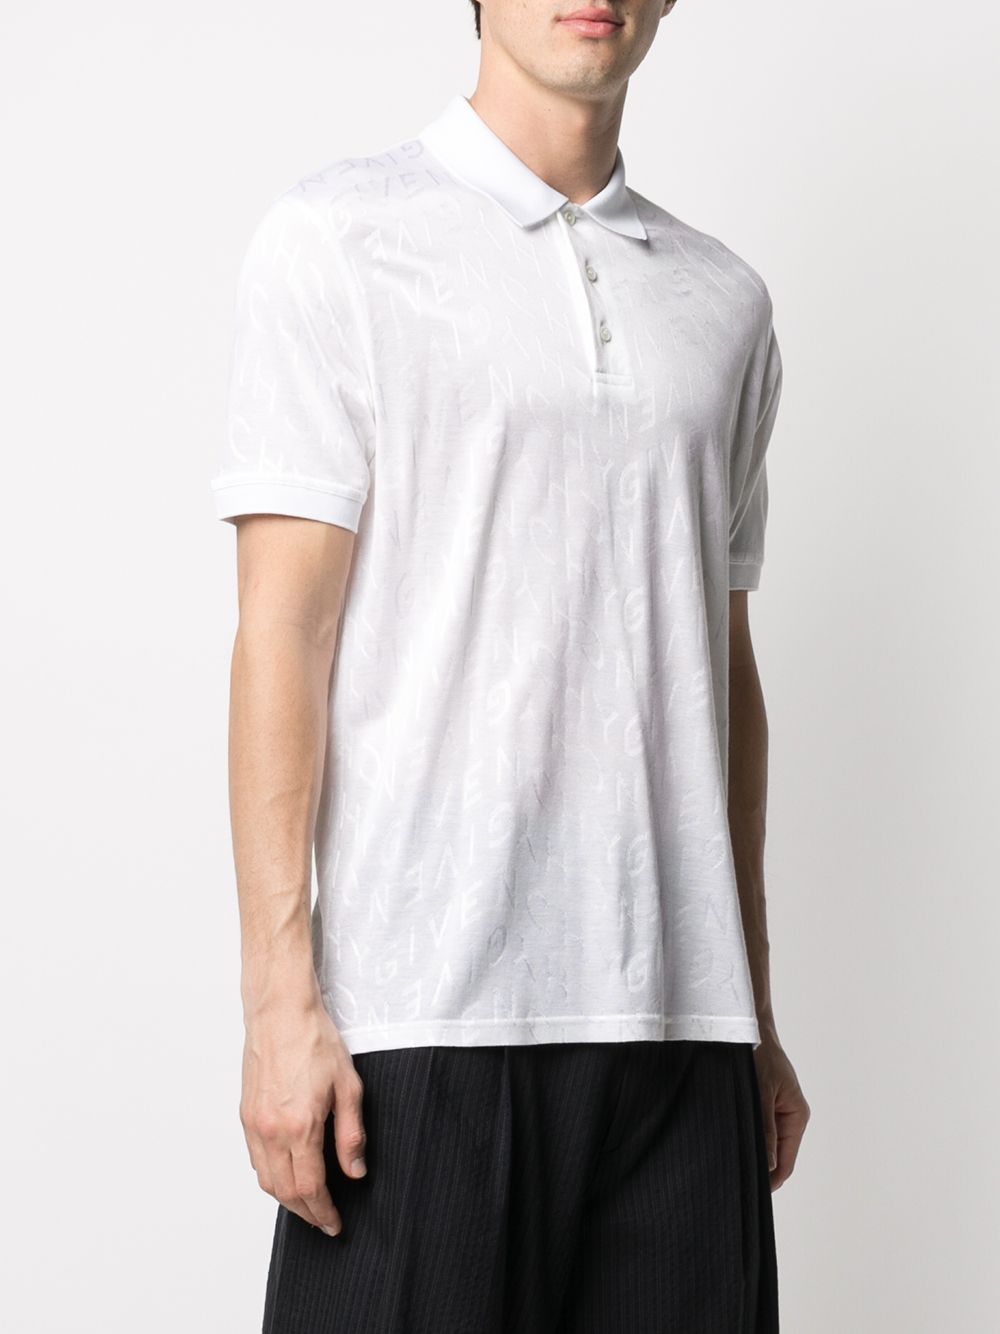 фото Givenchy рубашка поло с узором зигзаг